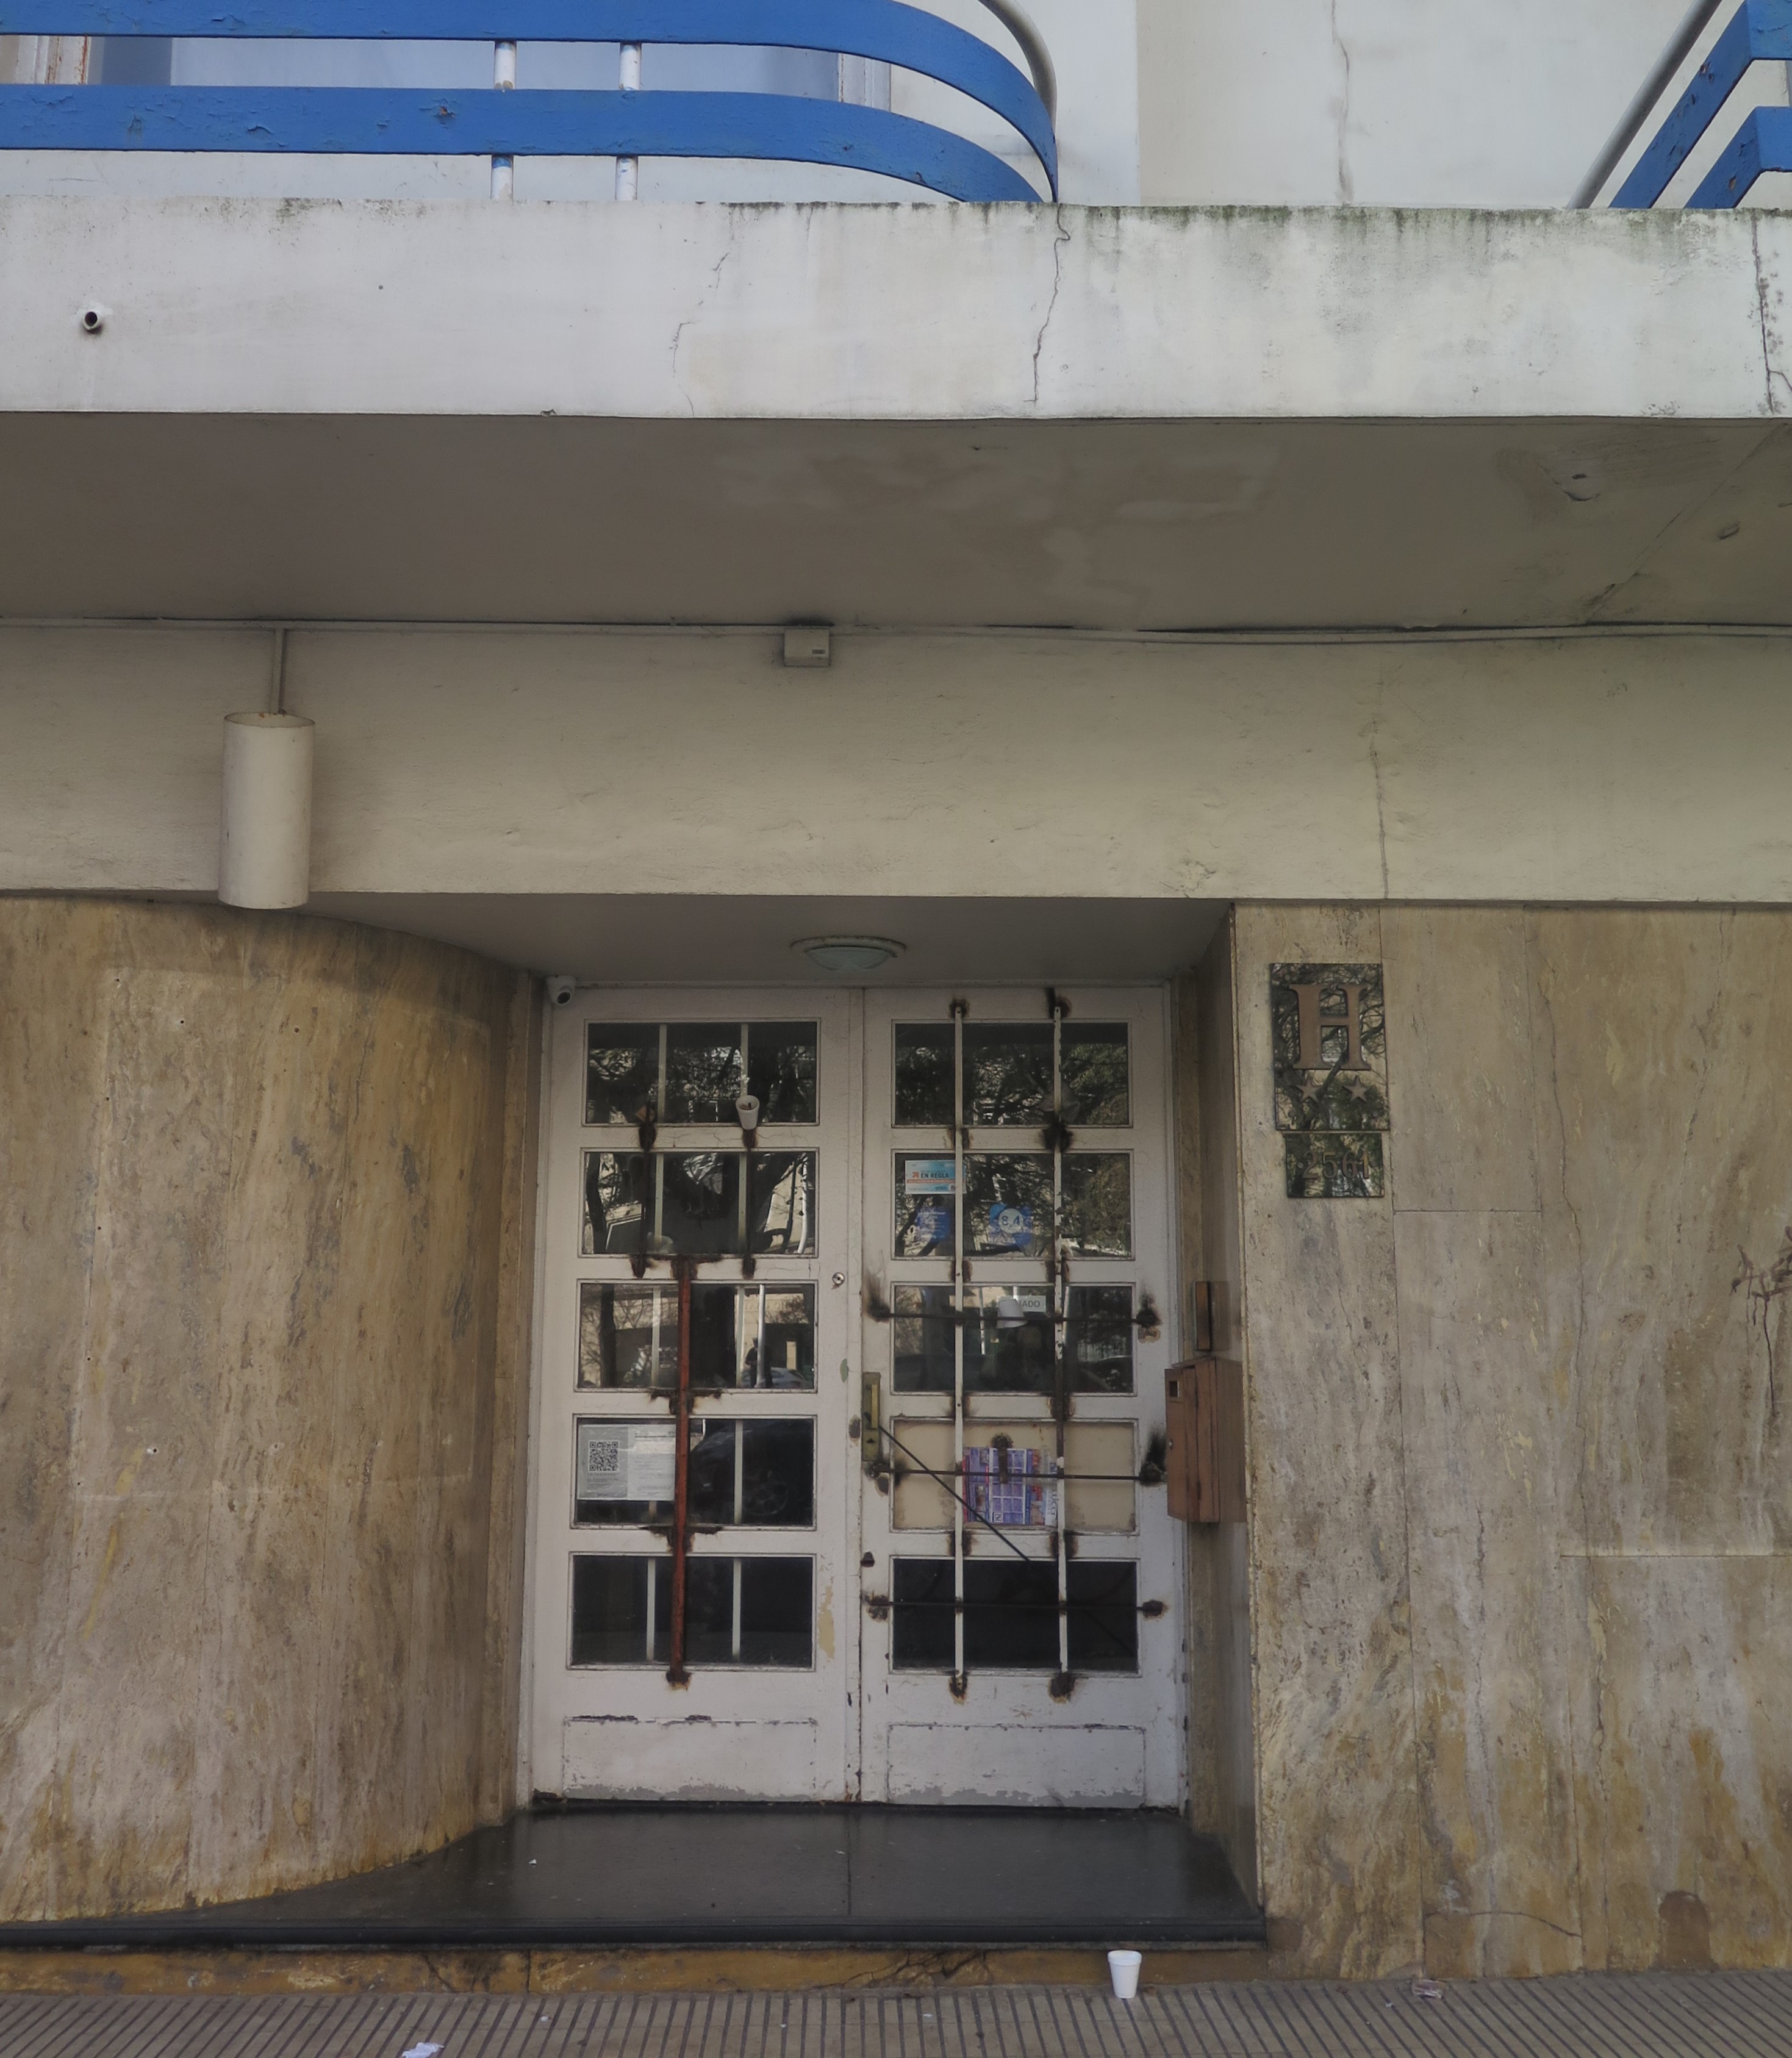 El ingreso clausurado al hotel, situado a menos de 200 metros de la sede del tribunal que intervino en el juicio.  - Foto: Belén Cano / Ministerio Público Fiscal